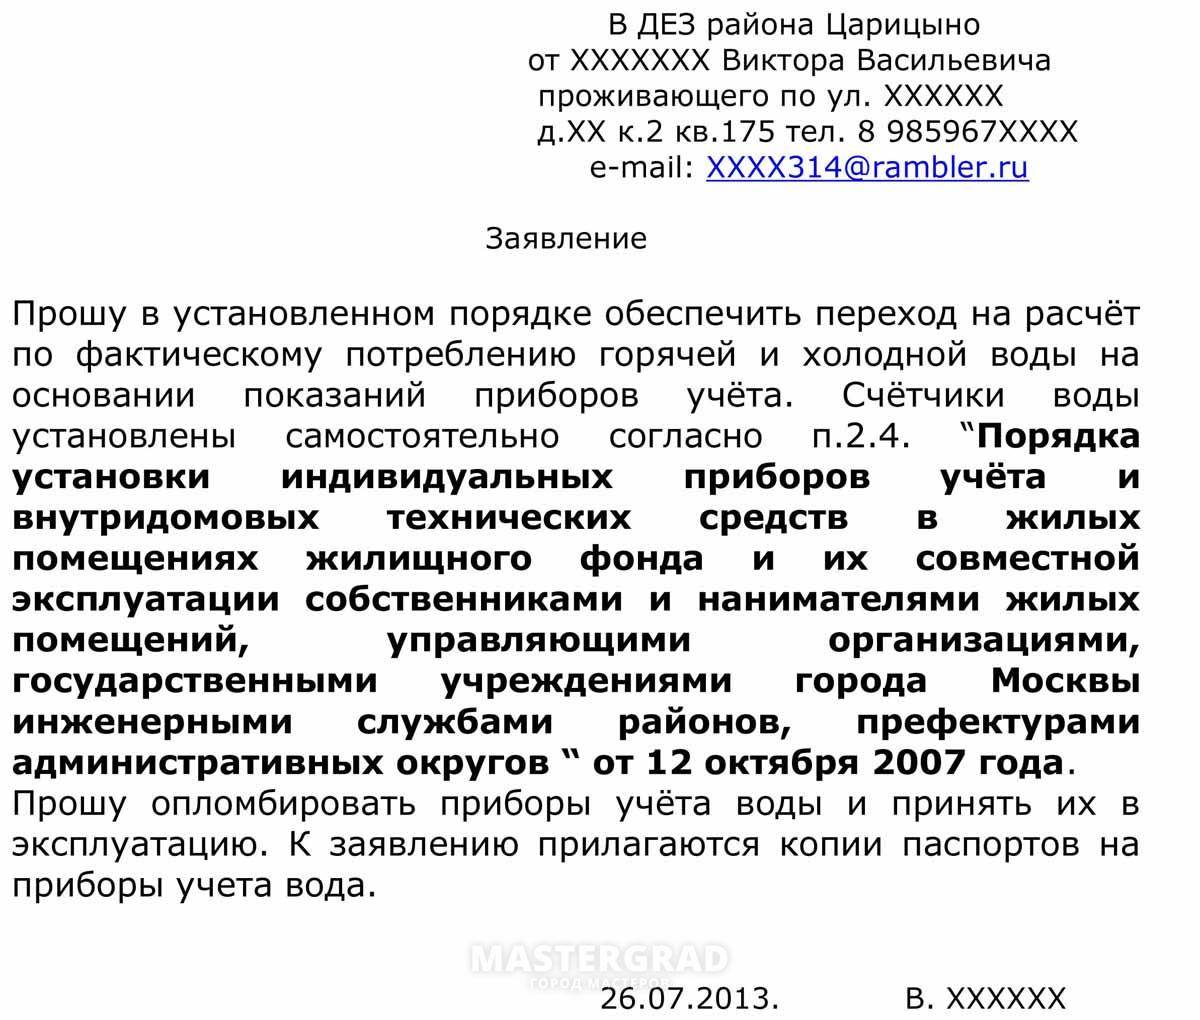 Как зарегистрировать счетчики воды в россии: порядок регистрации